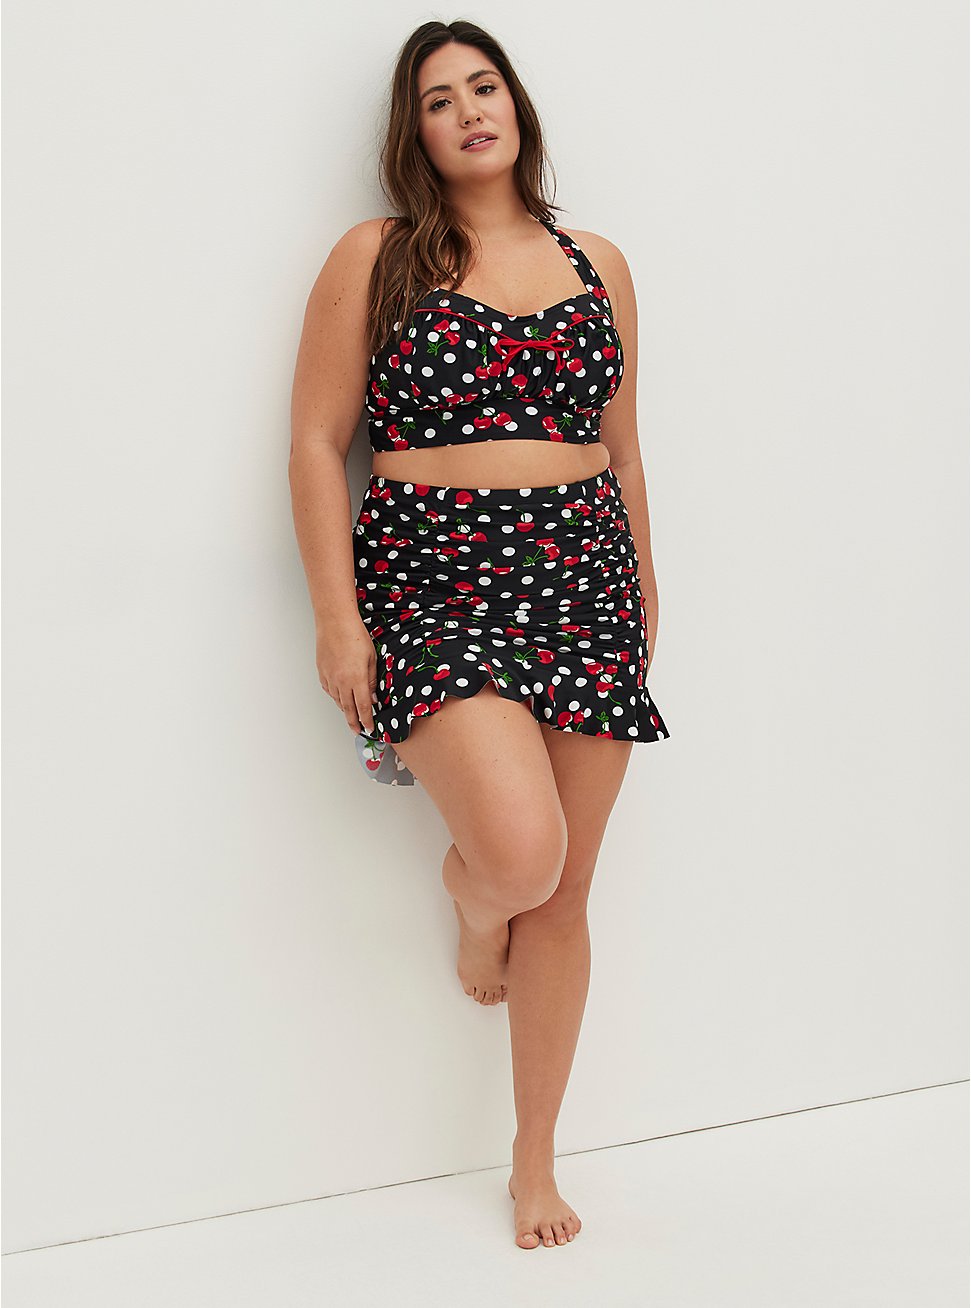 Retro Chic Ruffle Hem Swim Skirt - Cherries Print, BING CHERRY, hi-res